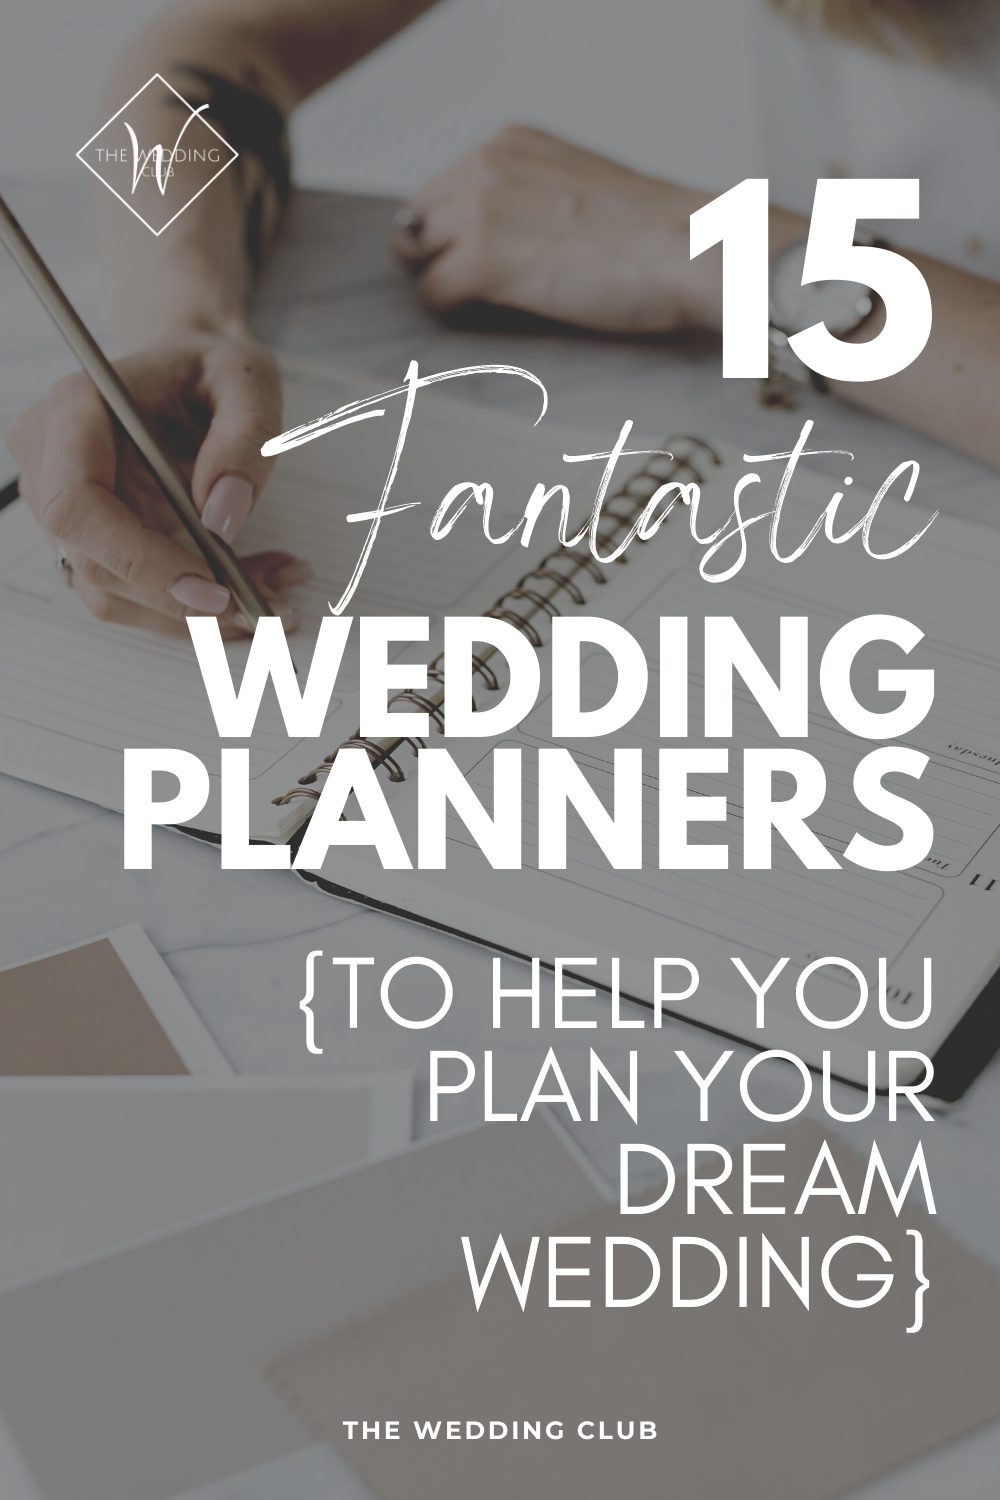 15 Fantastic Wedding Planners - The Wedding Club